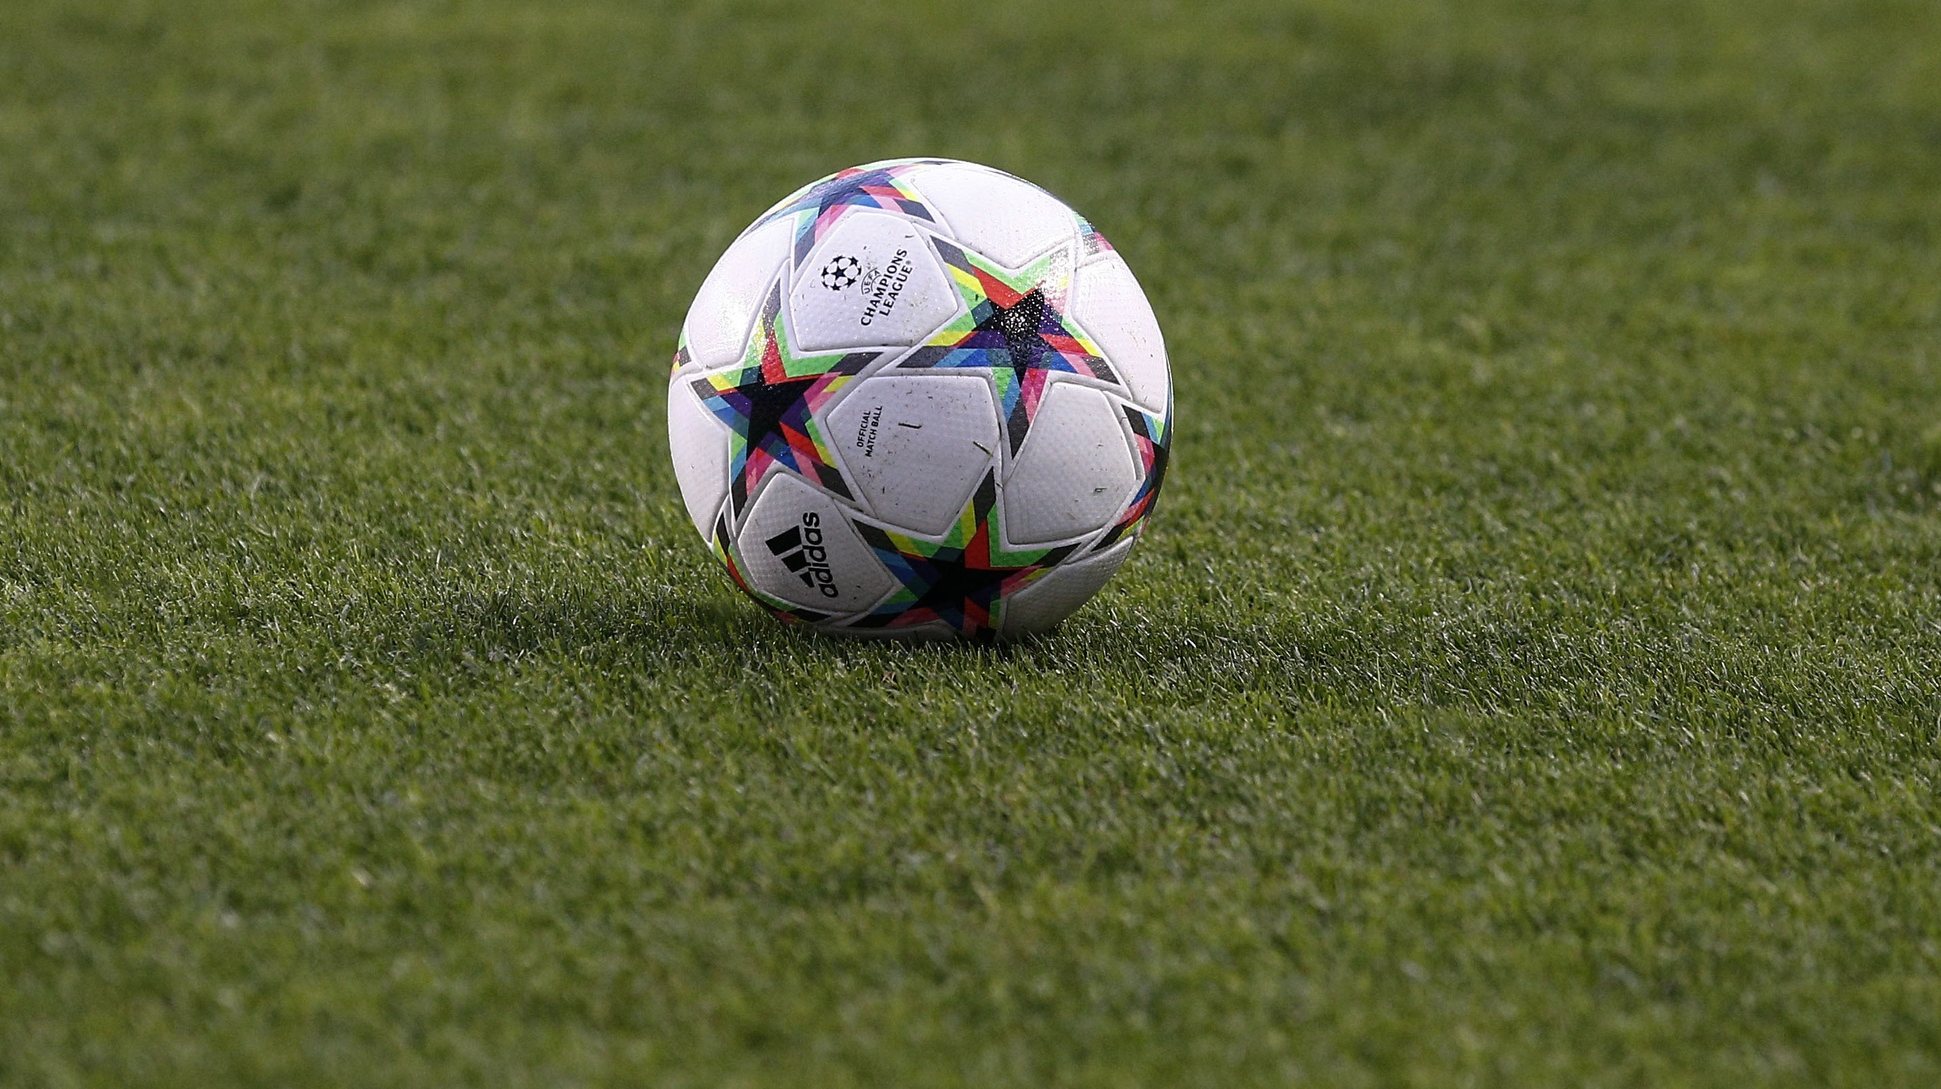 Bola de futebol  utilizada nos jogos da Liga dos Campeões  durante a  época de 2022/2023, 06 de setembro de 2022. ANTONIO COTRIM/LUSA